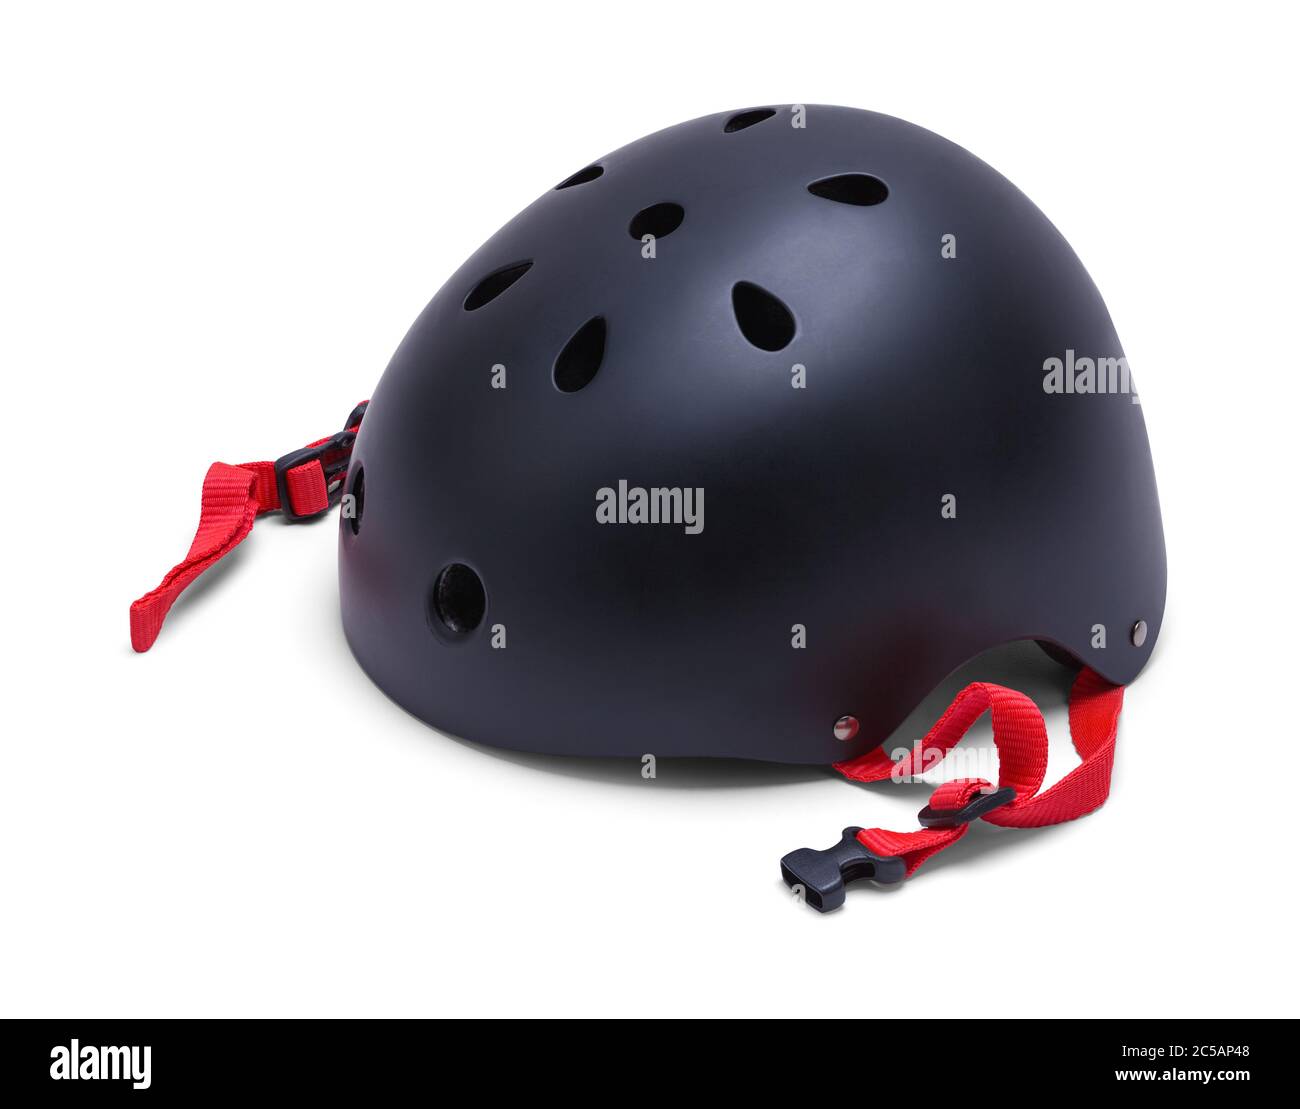 Black Skate Helmet Isolated on White Background. Stock Photo